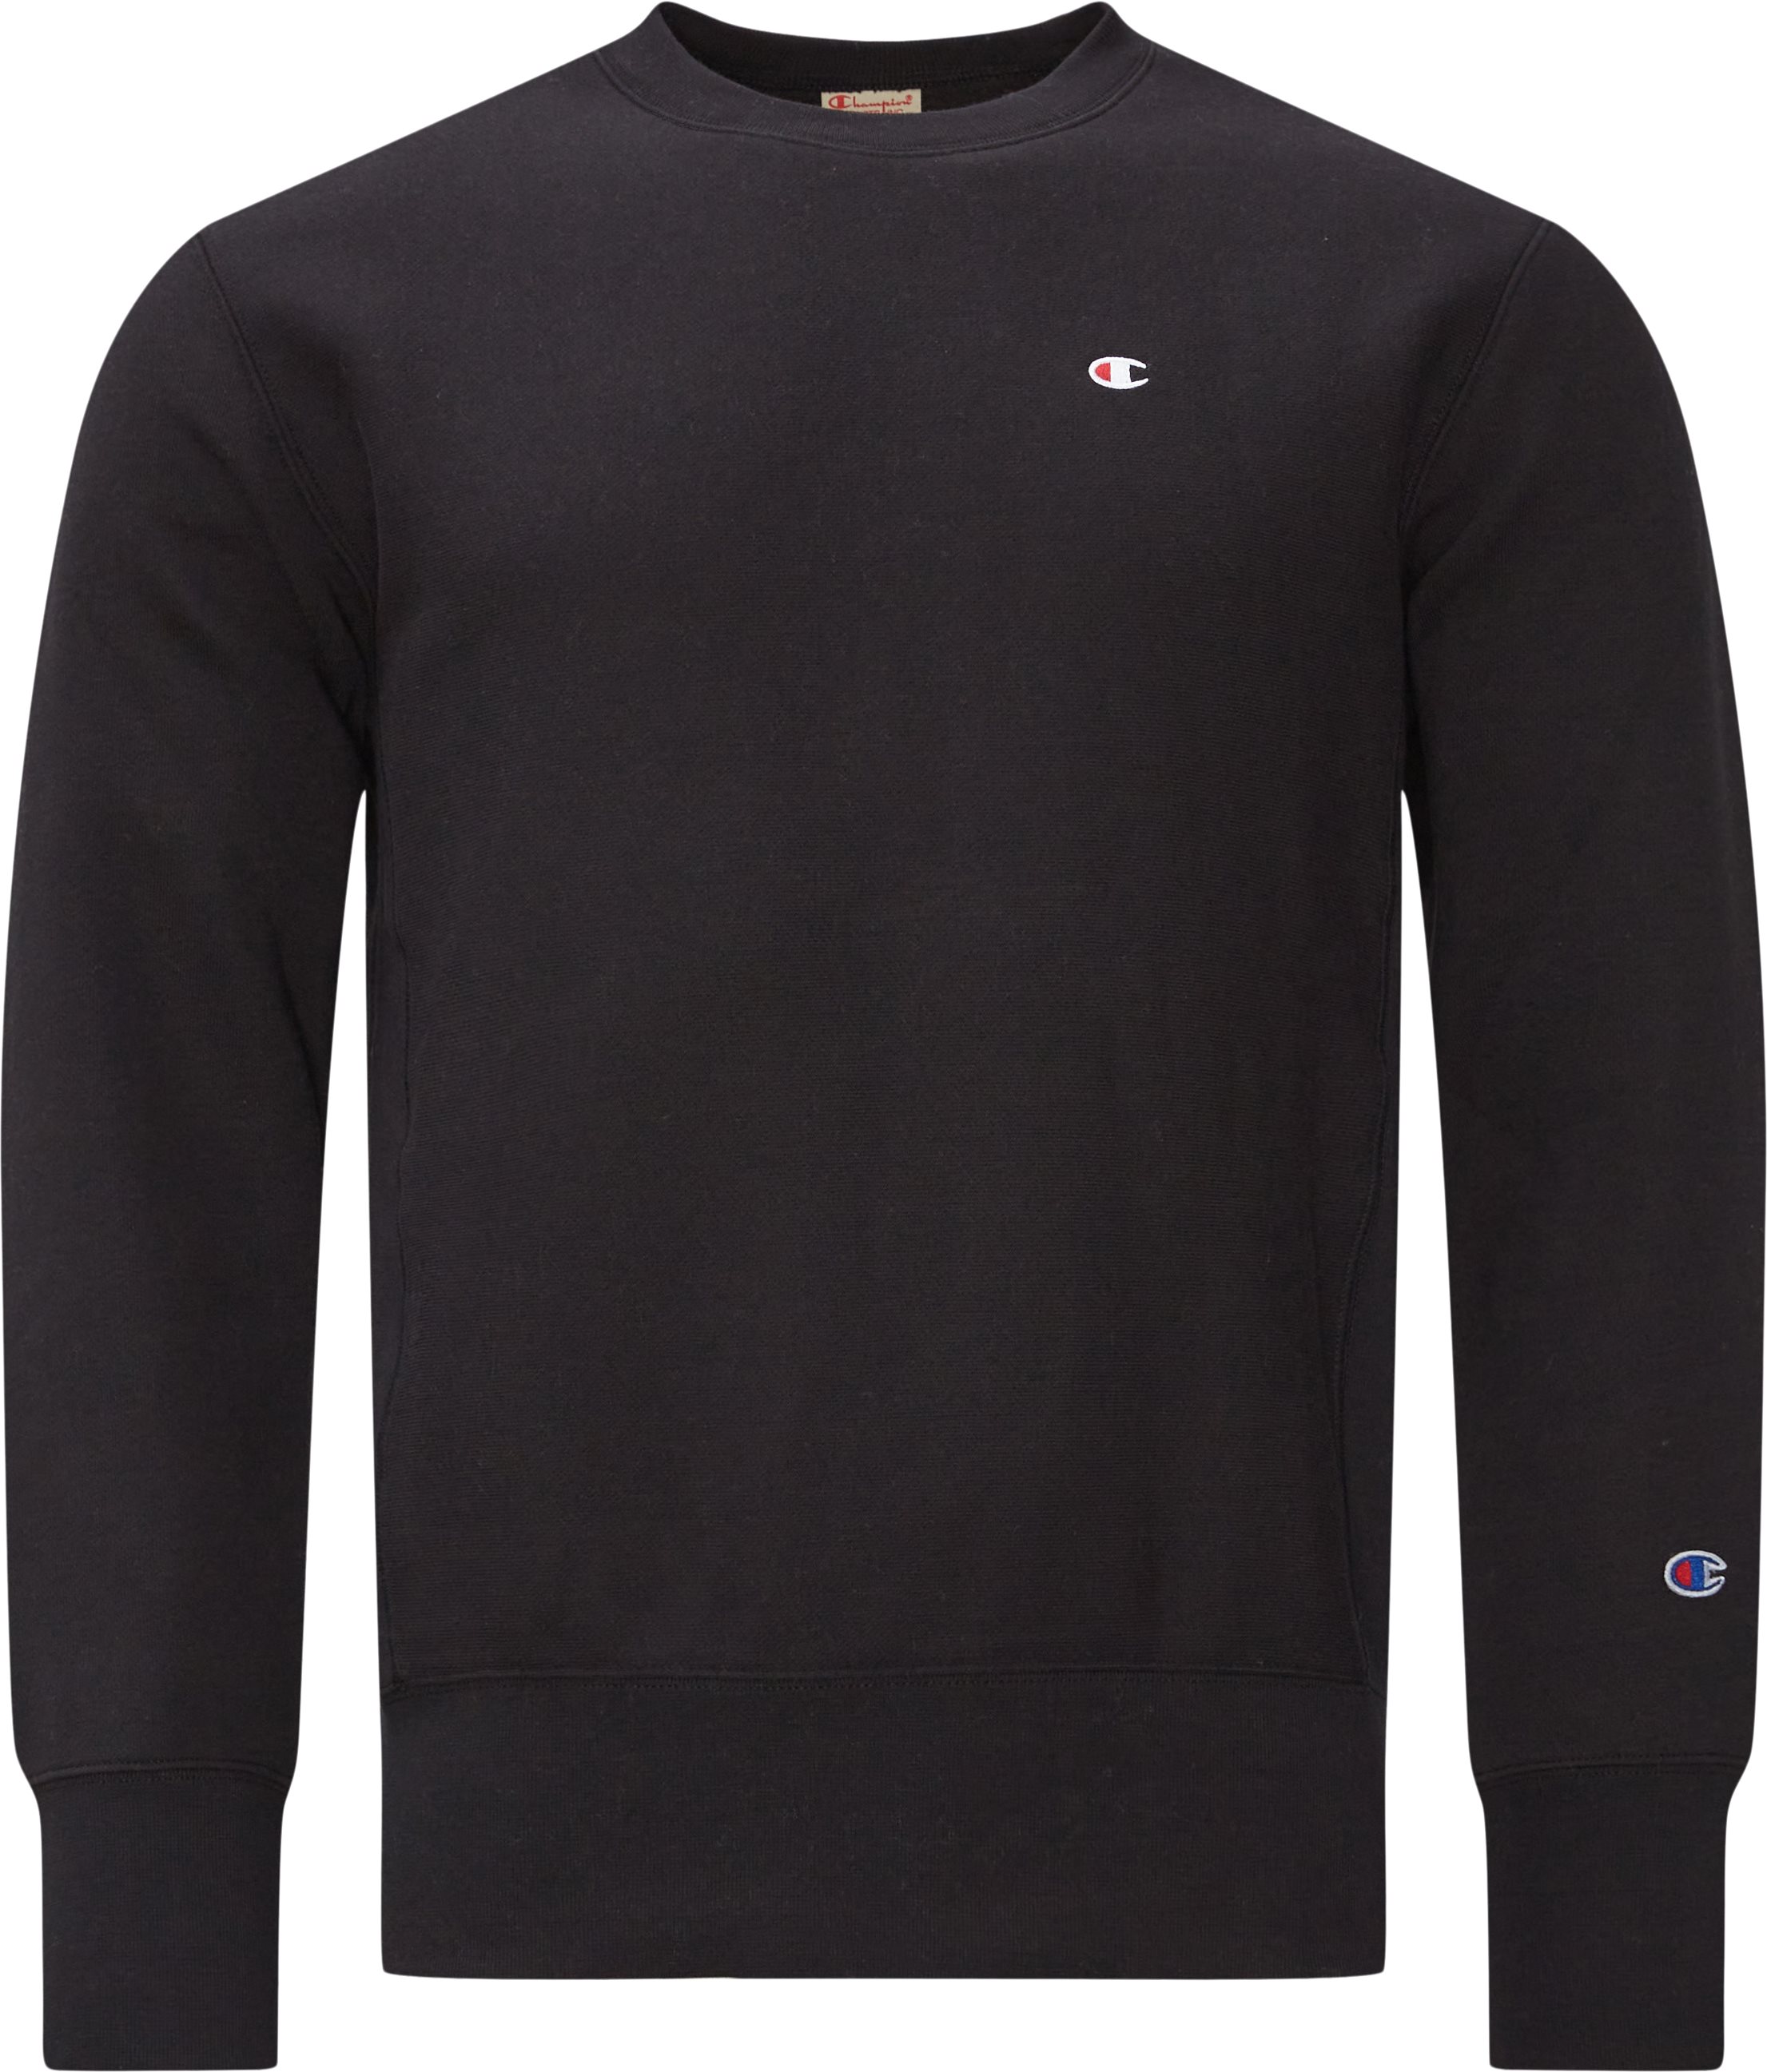 216495 Crewneck Sweatshirt - Sweatshirts - Regular fit - Sort